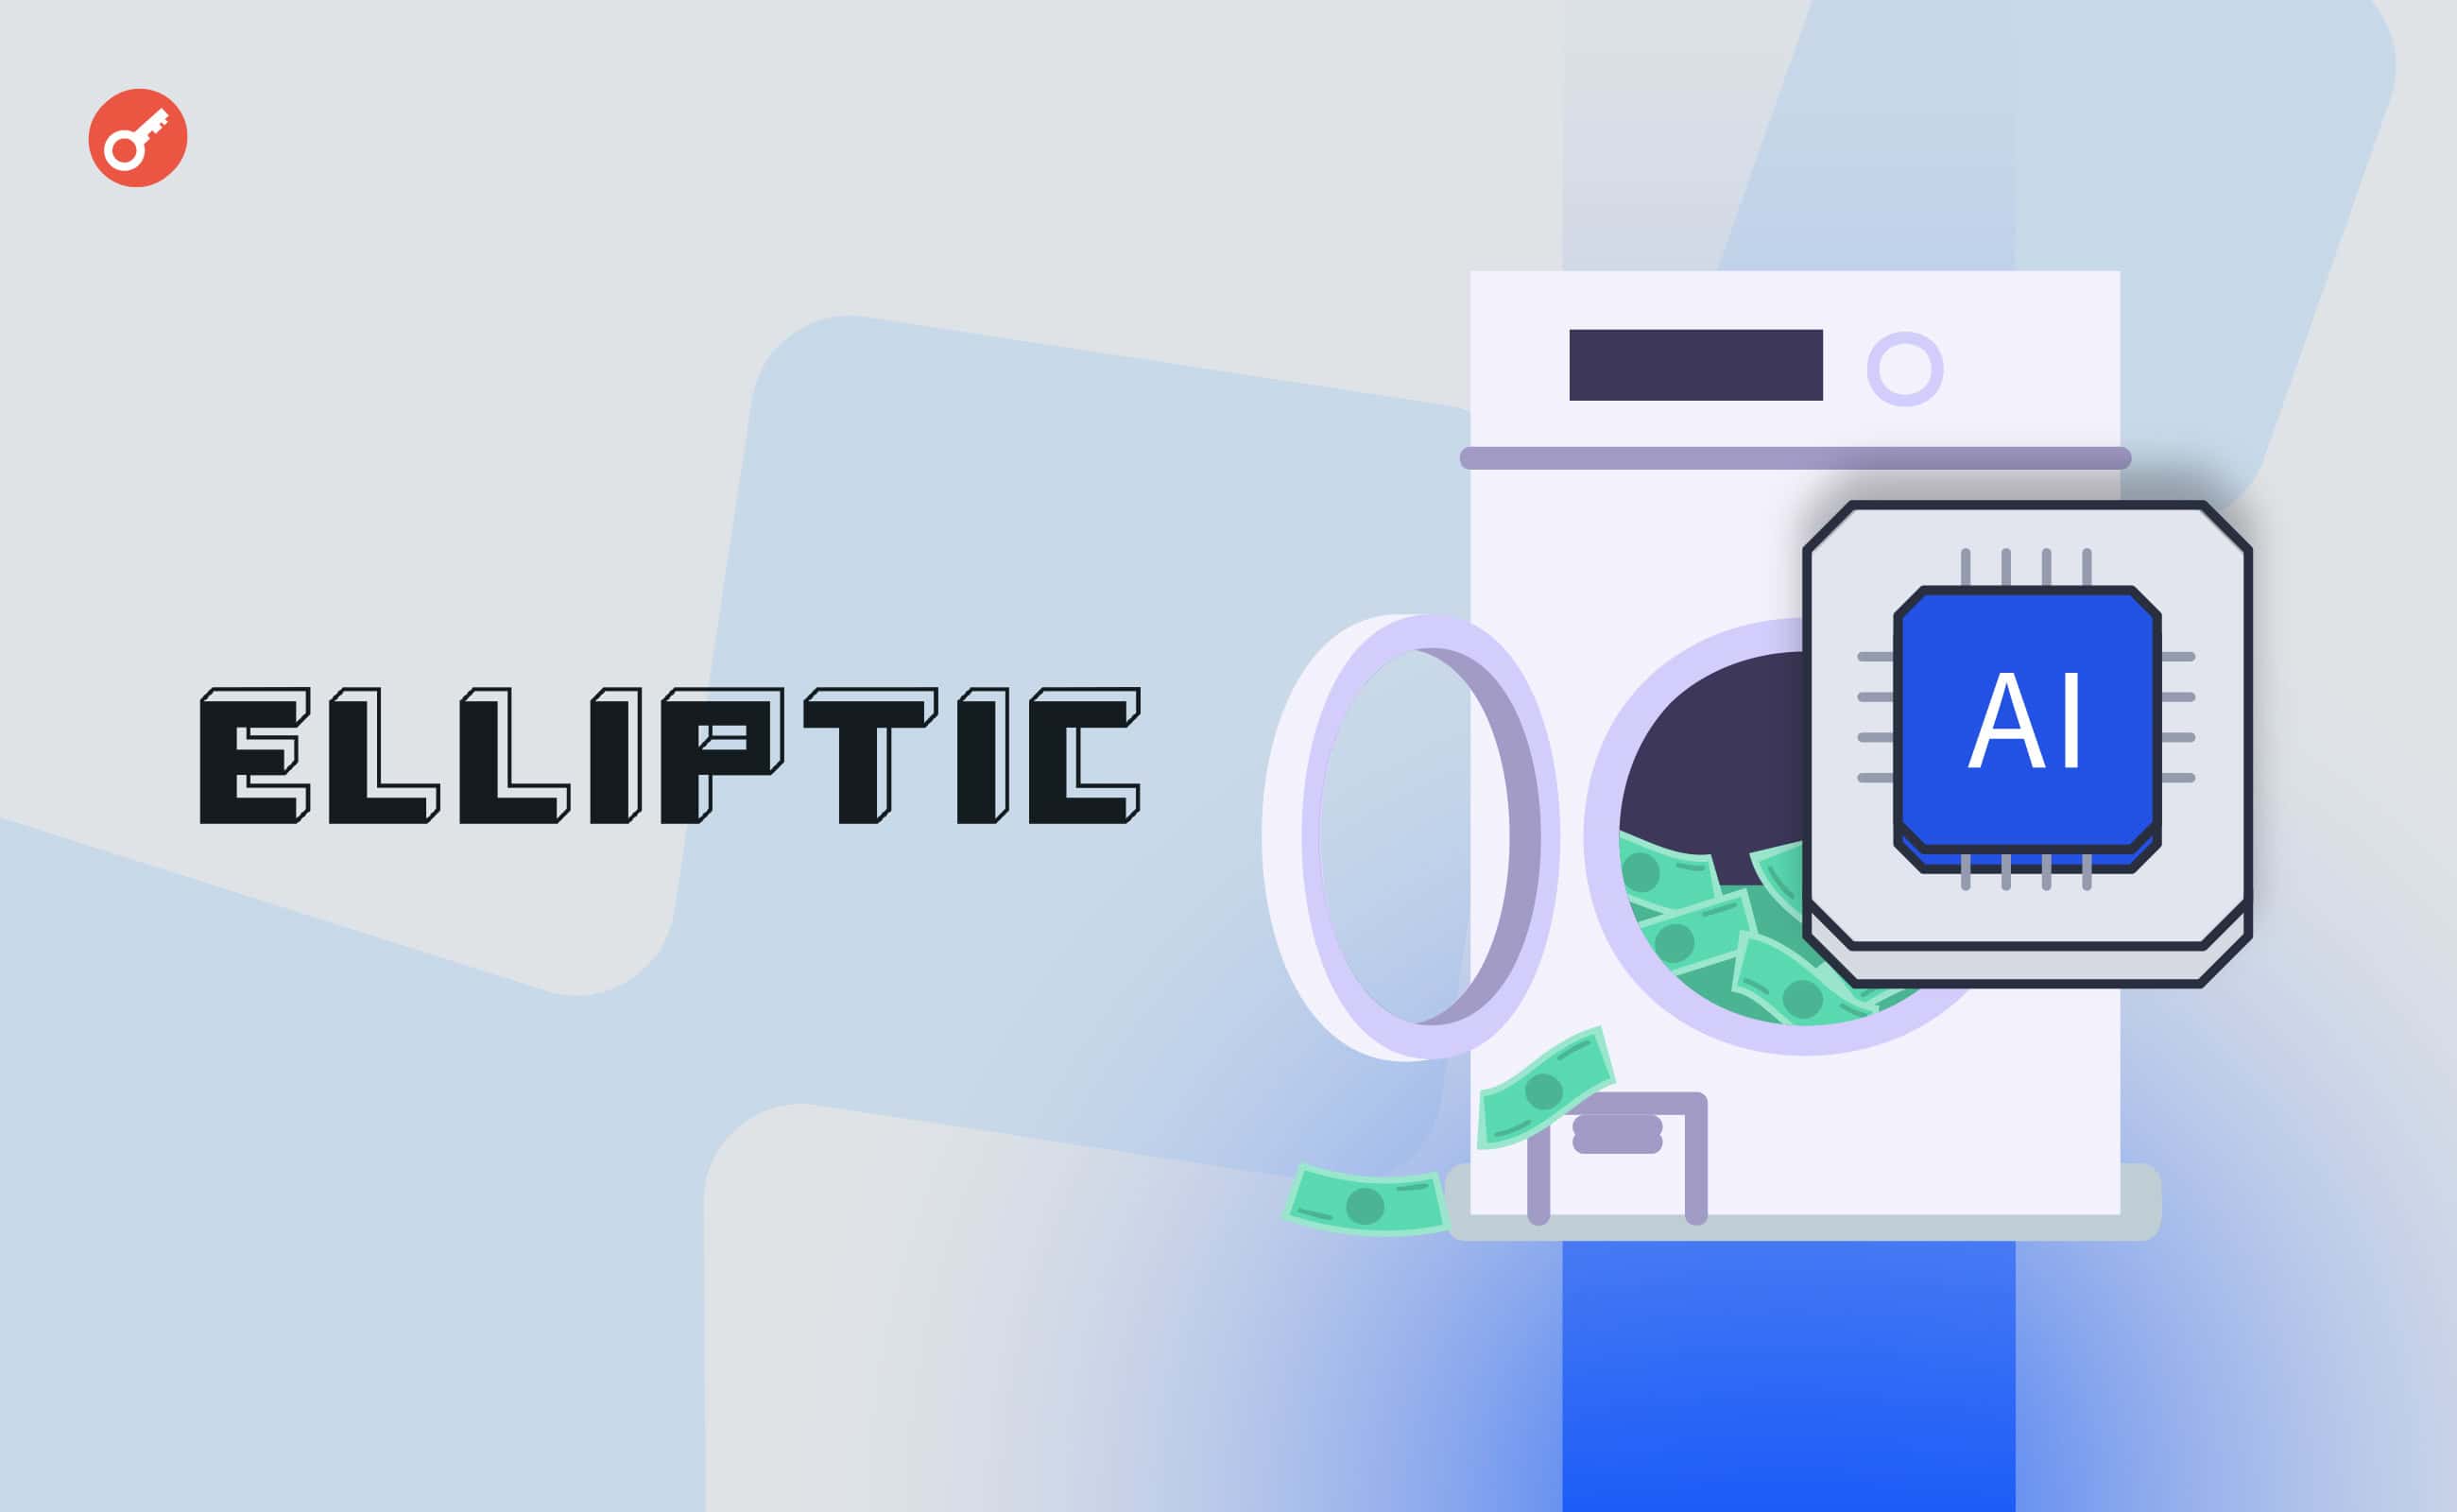 Elliptic залучила ШІ для виявлення відмивання грошей через біткоїни. Головний колаж новини.